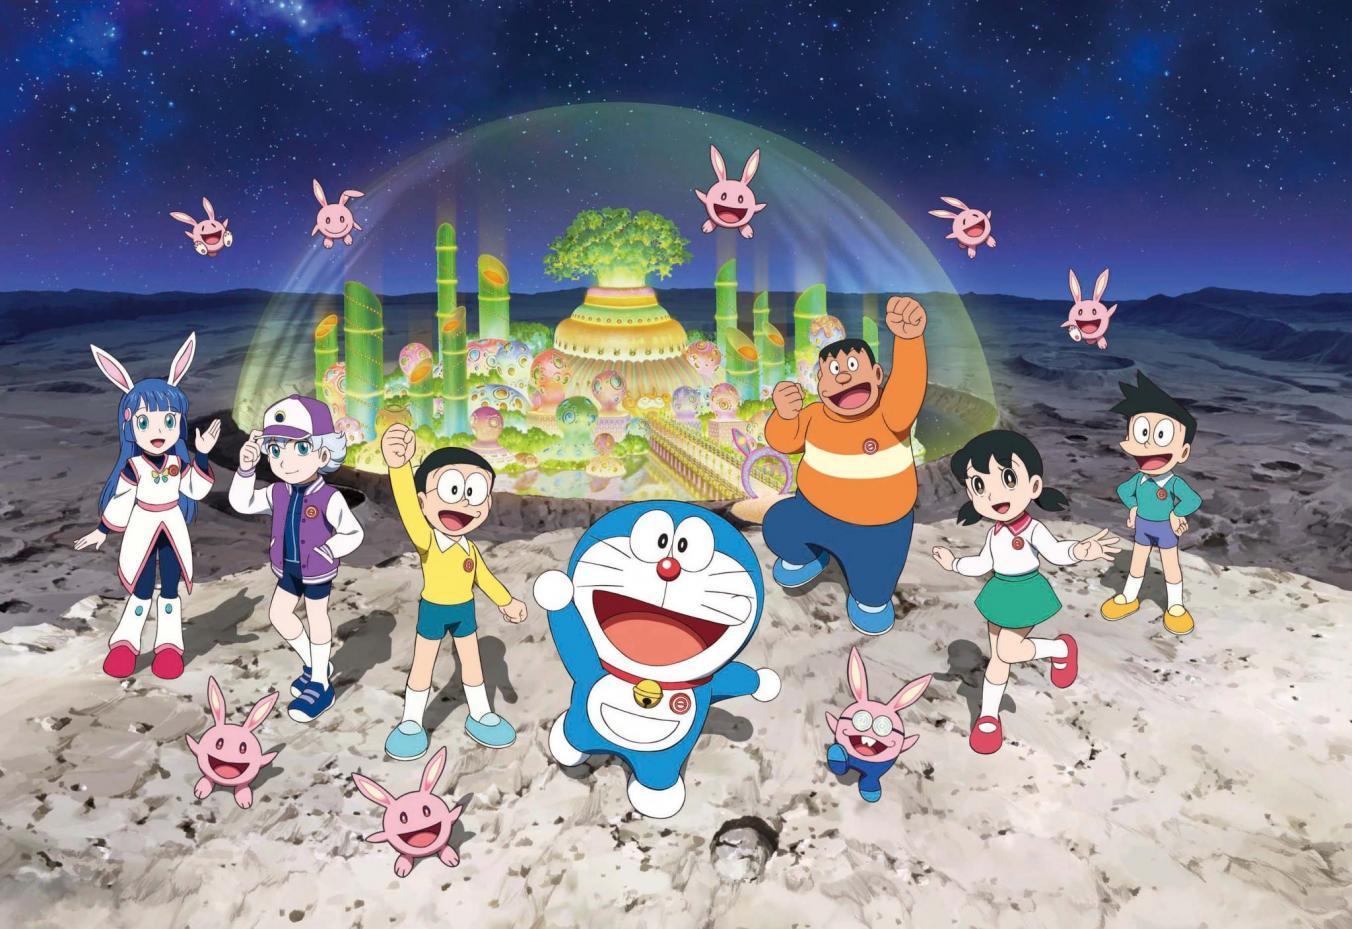 Một bộ phim hoạt hình Doraemon mới đang chờ đón bạn. Nhấp vào ảnh liên quan để thưởng thức câu chuyện mới nhất với các nhân vật yêu thích như Nobita và Doraemon. Bạn sẽ được giải trí với những pha hành động hấp dẫn và câu chuyện hấp dẫn.